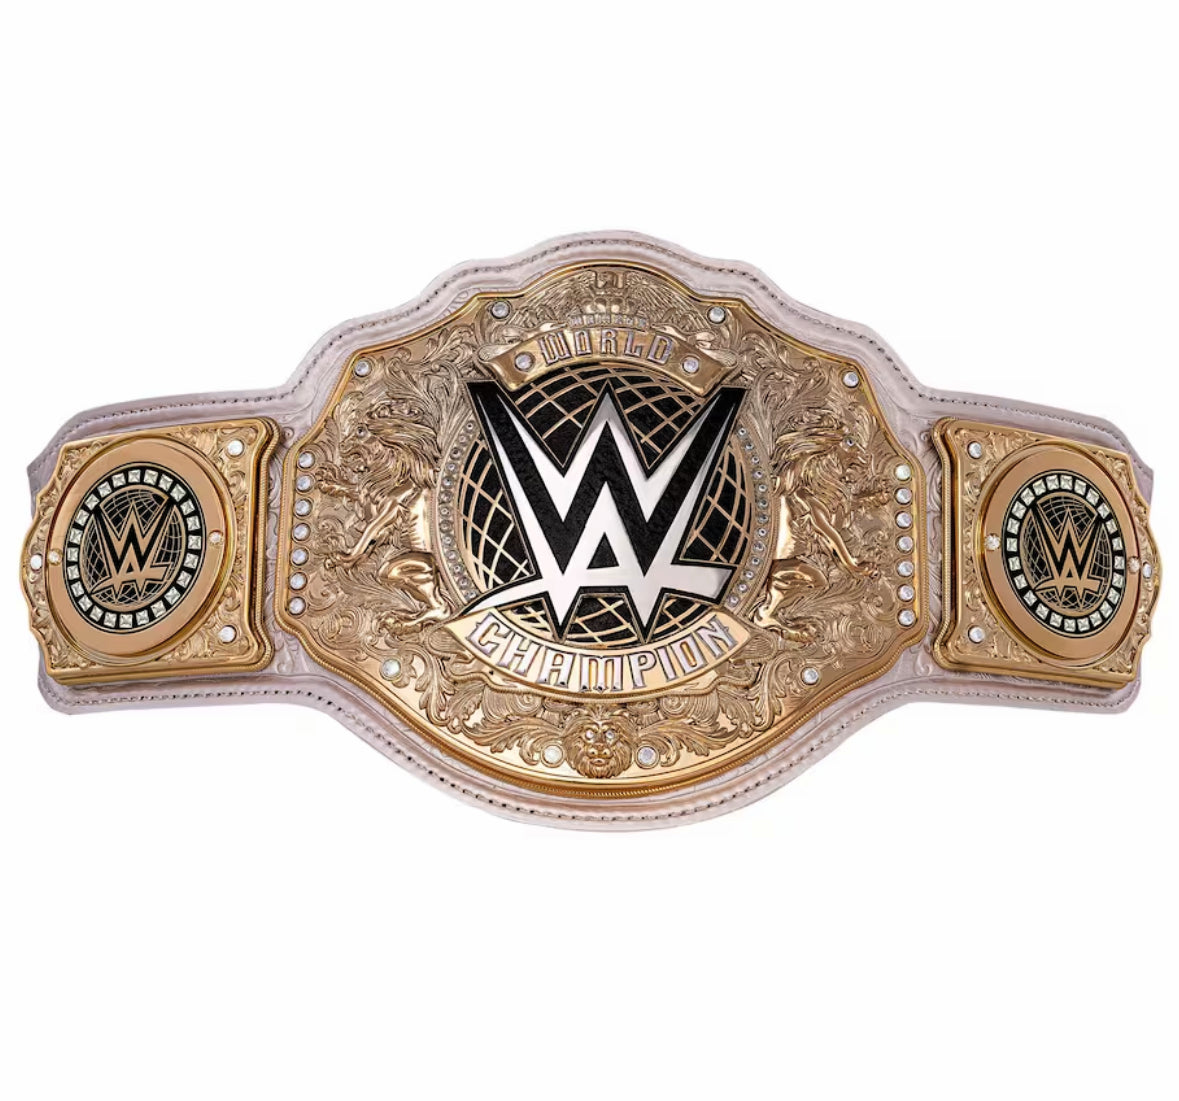 New 2023 WWE Women's Heavyweight Wrestling Championship Replica Title Belt, WWE Belt - Women's Champion Belt, 2MM Brass Adult Size